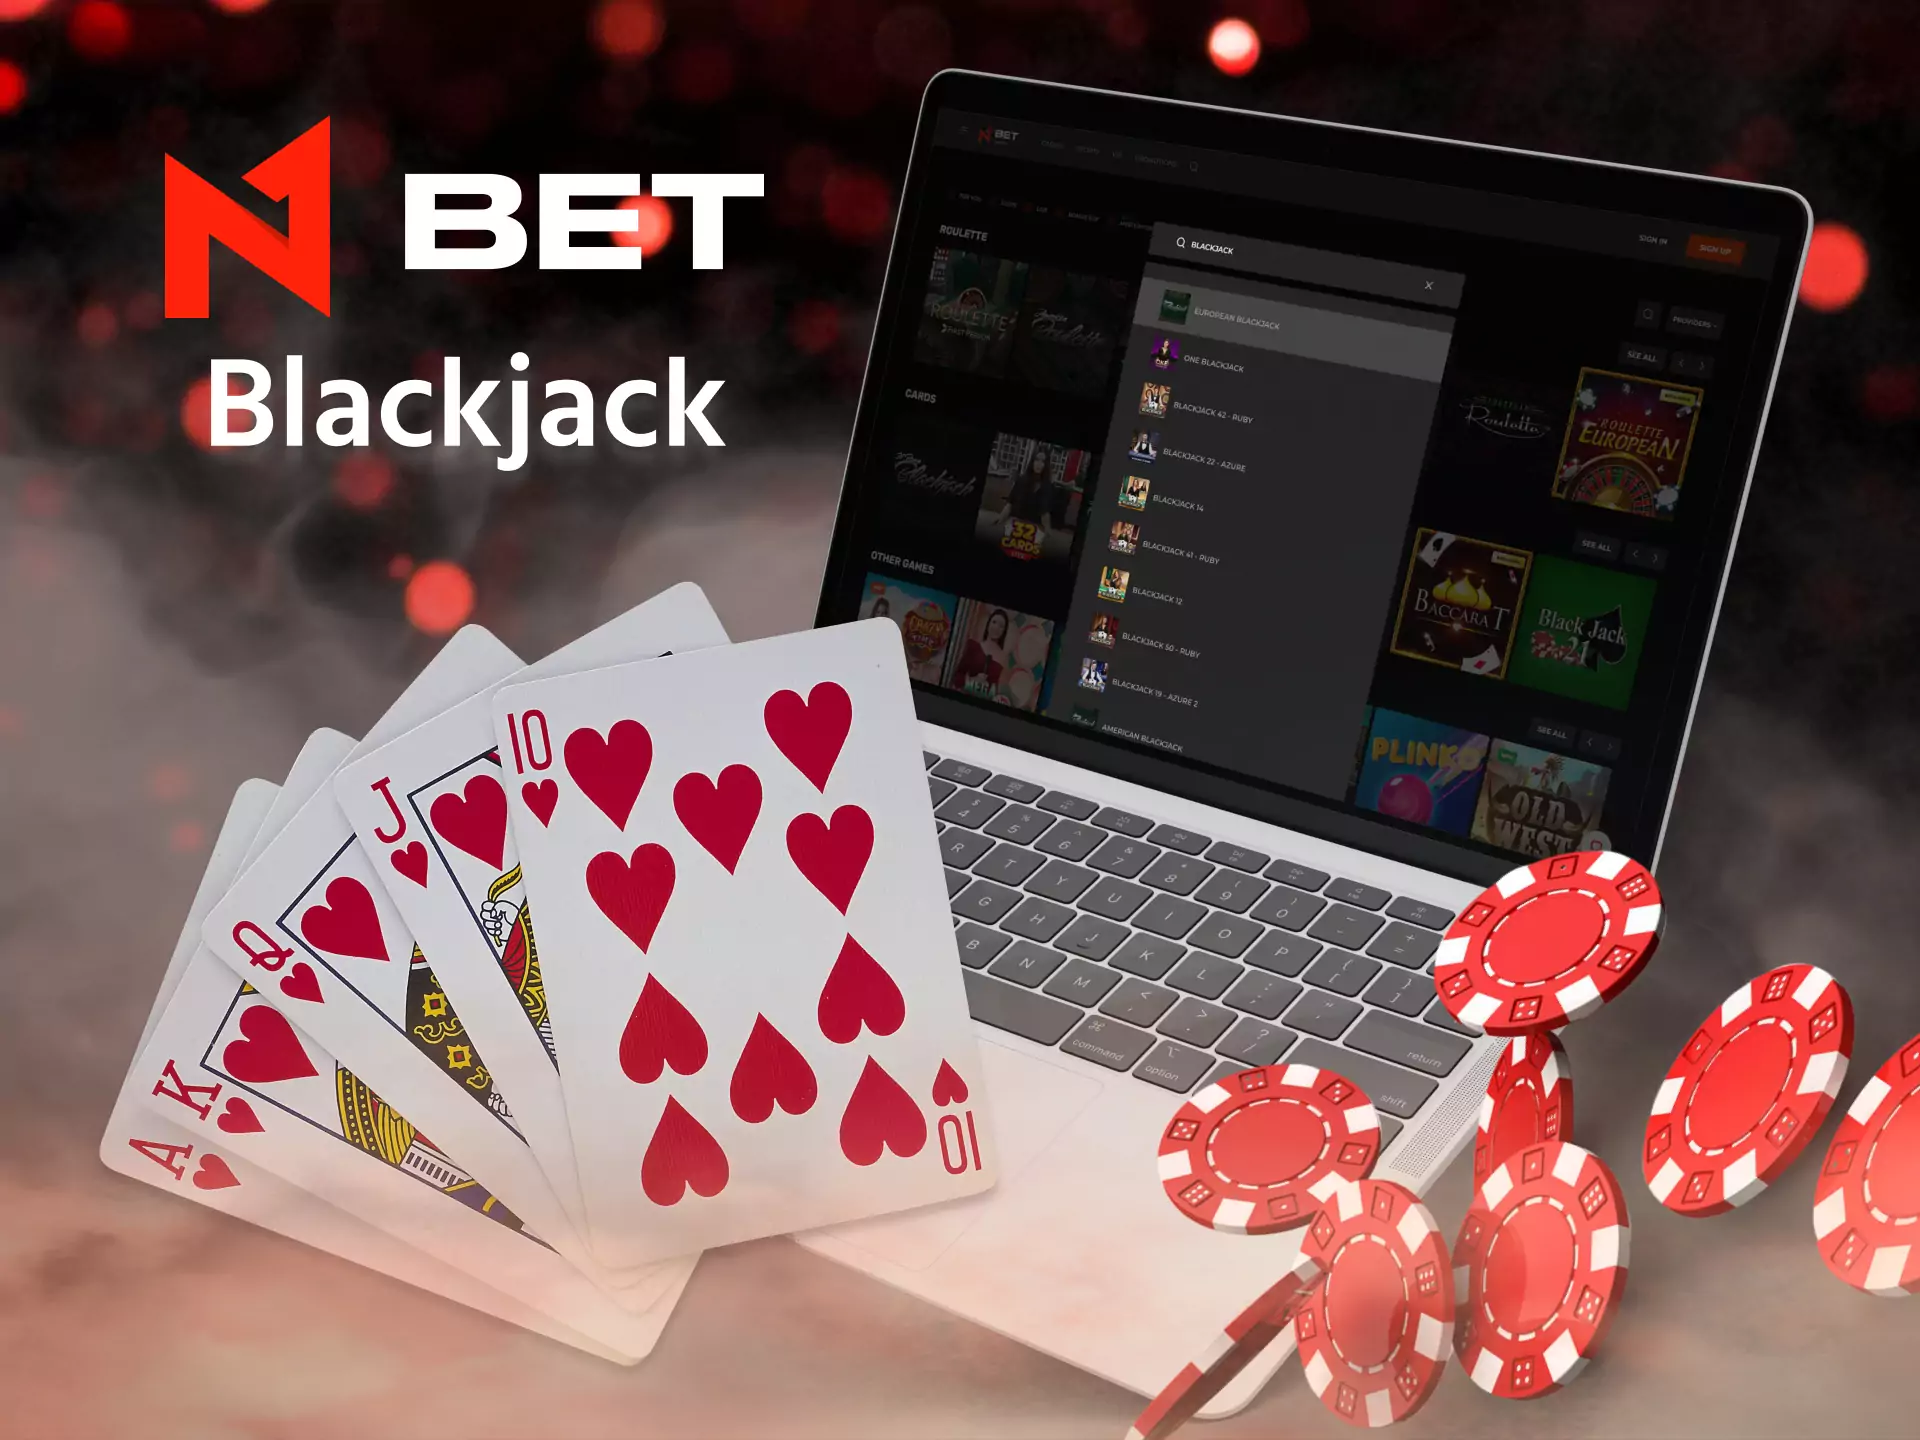 Play blackjack at N1Bet.